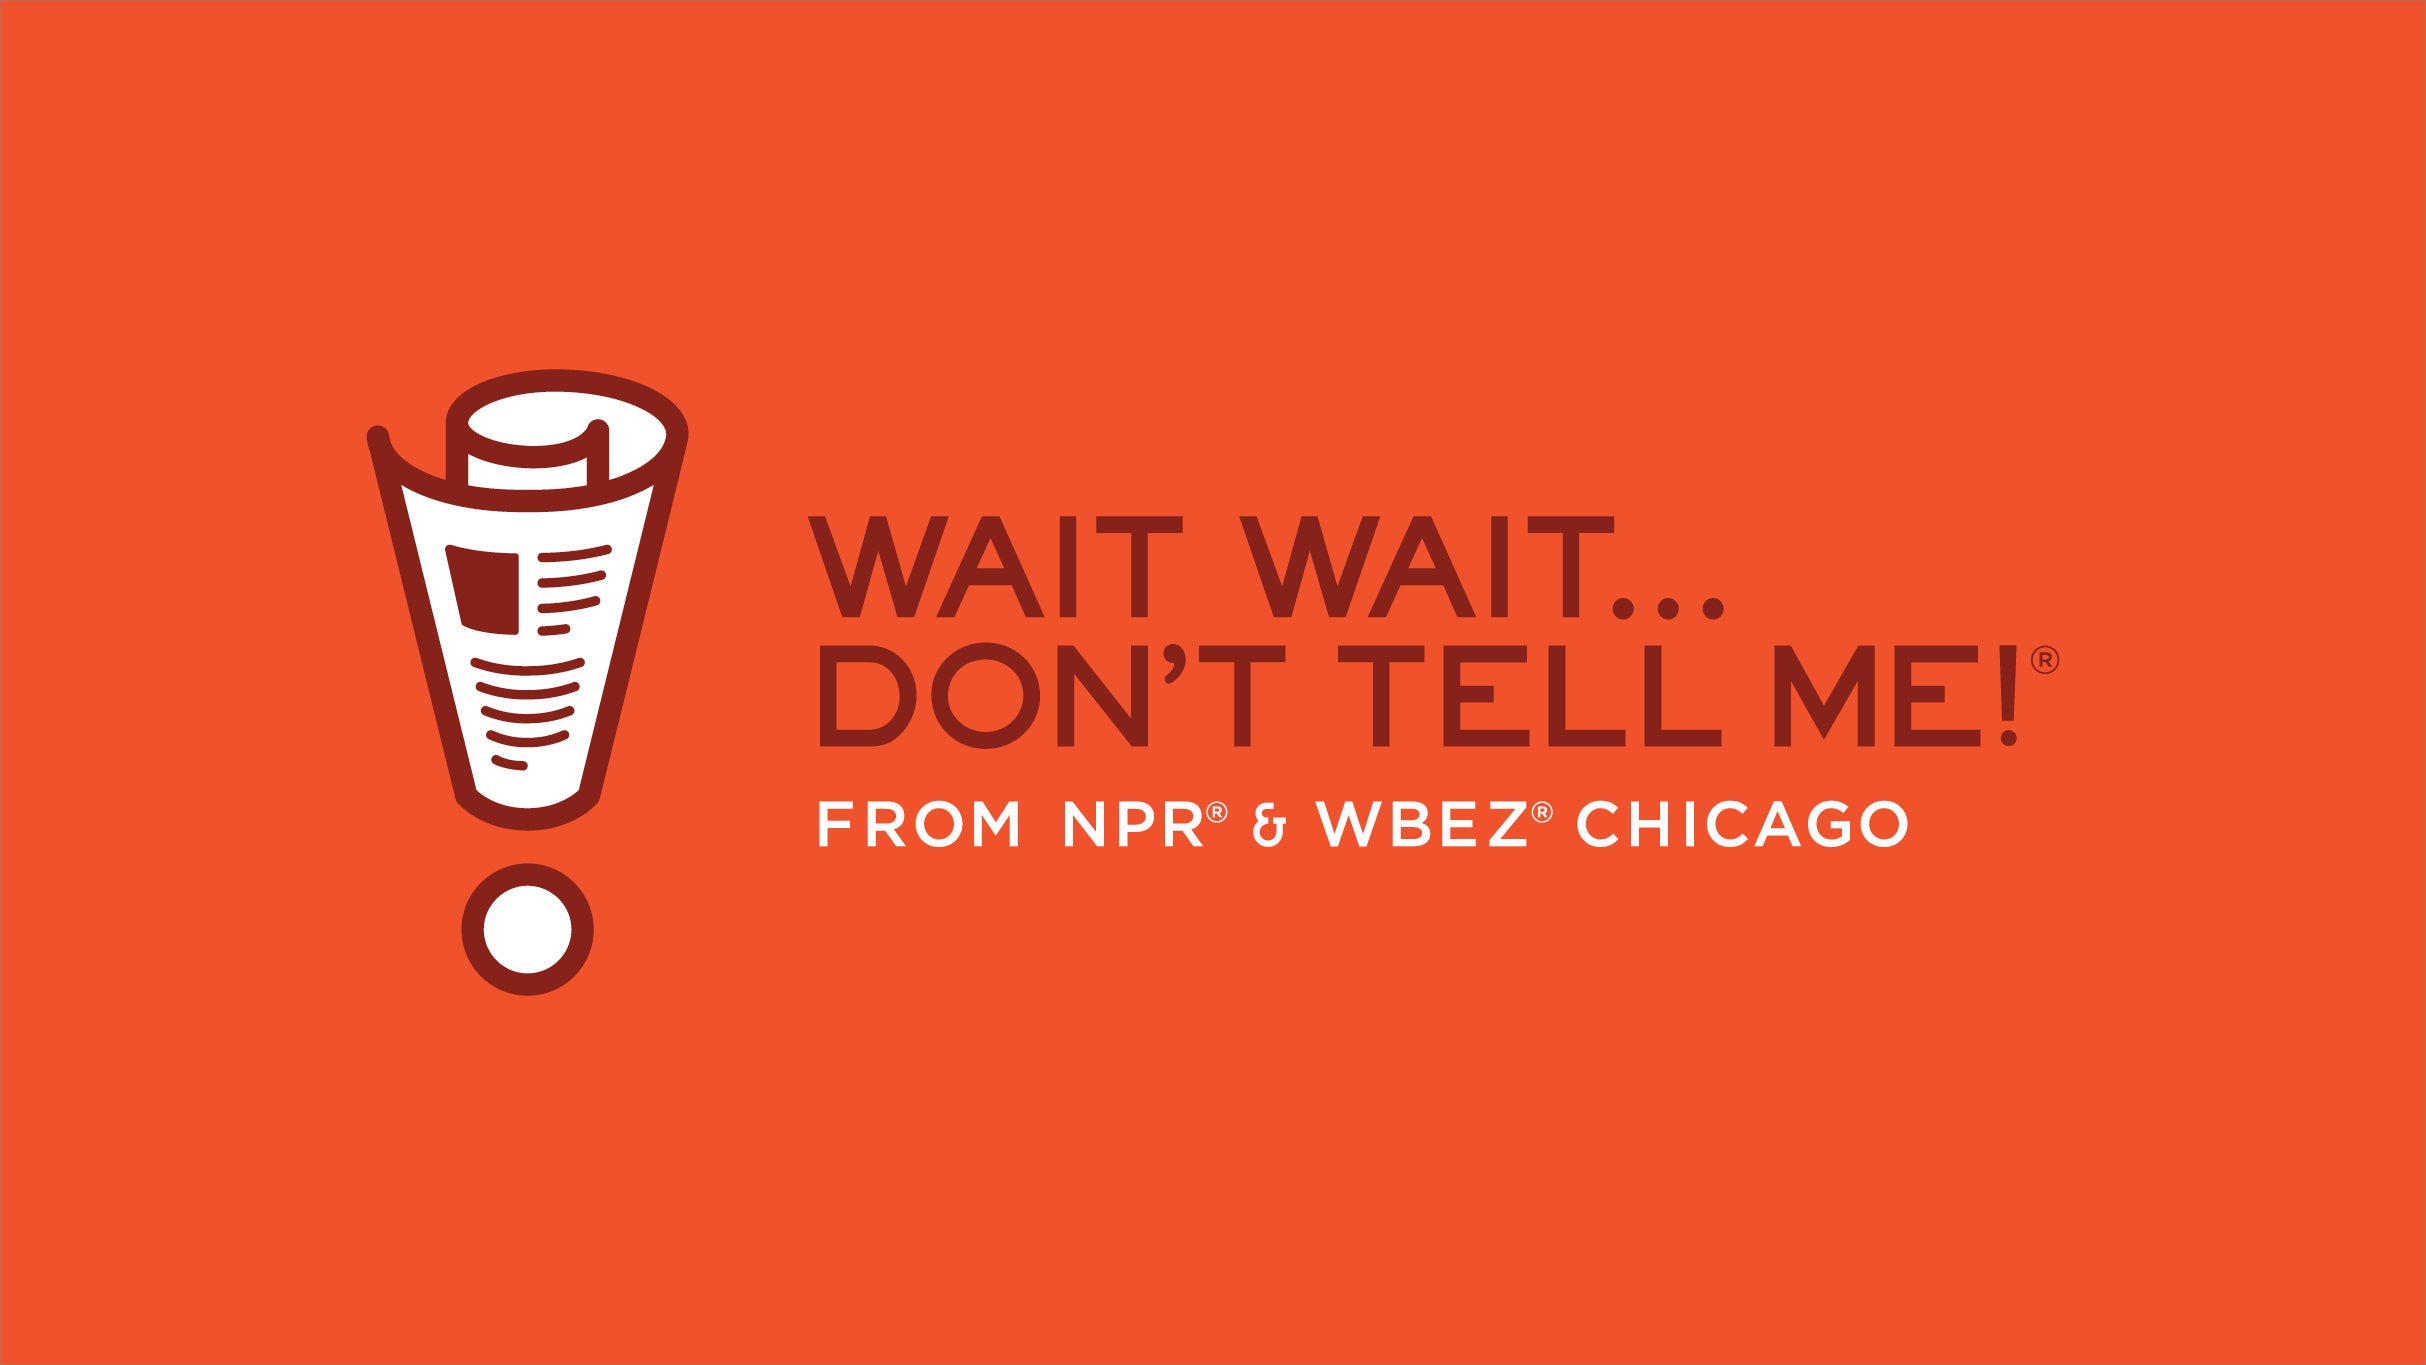 NPR's Wait Wait Don't Tell Me presales in Seattle